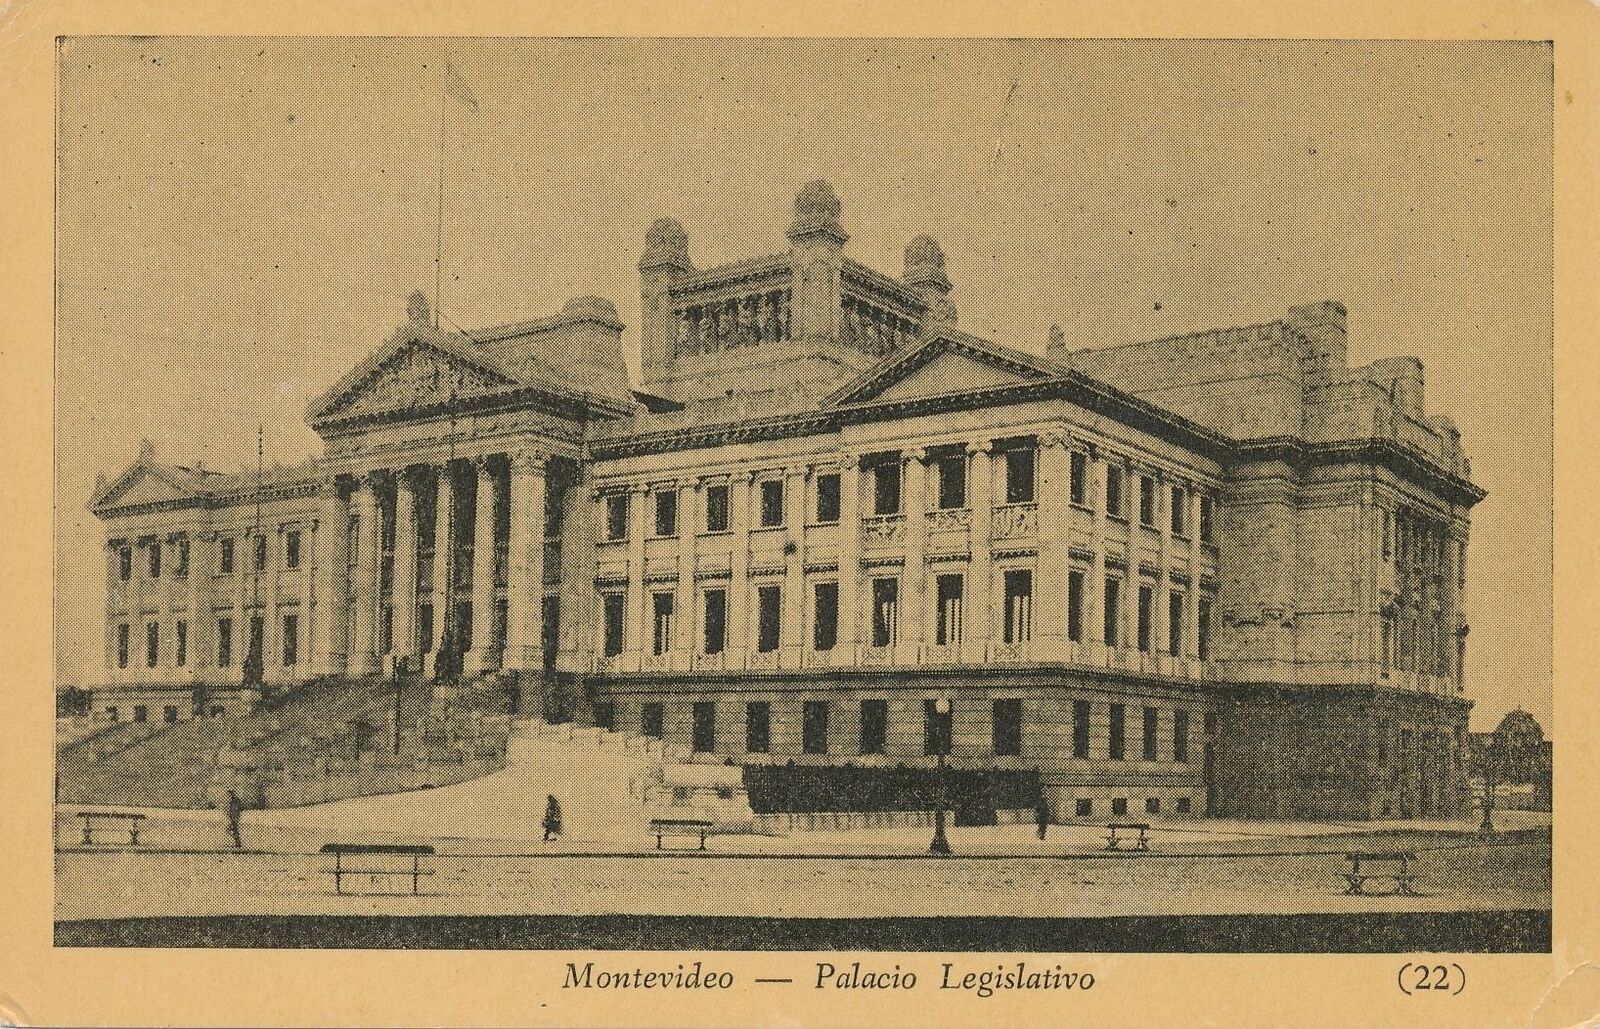 MONTEVIDEO - Palacio Legislativo Postcard - Uruguay